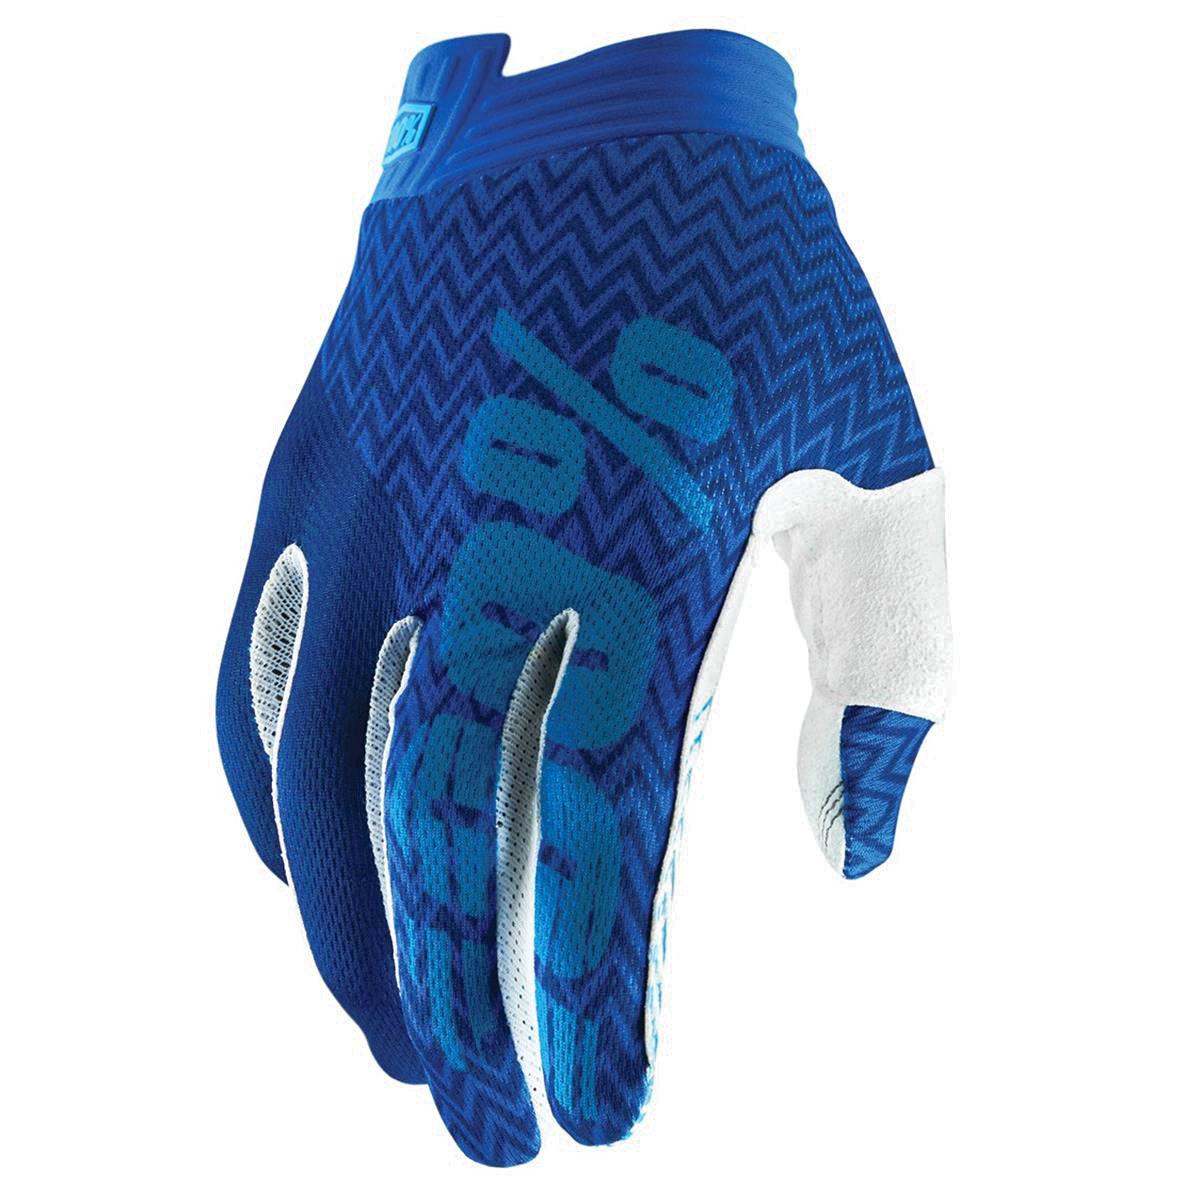 100% MTB Gloves iTrack Blue/Navy